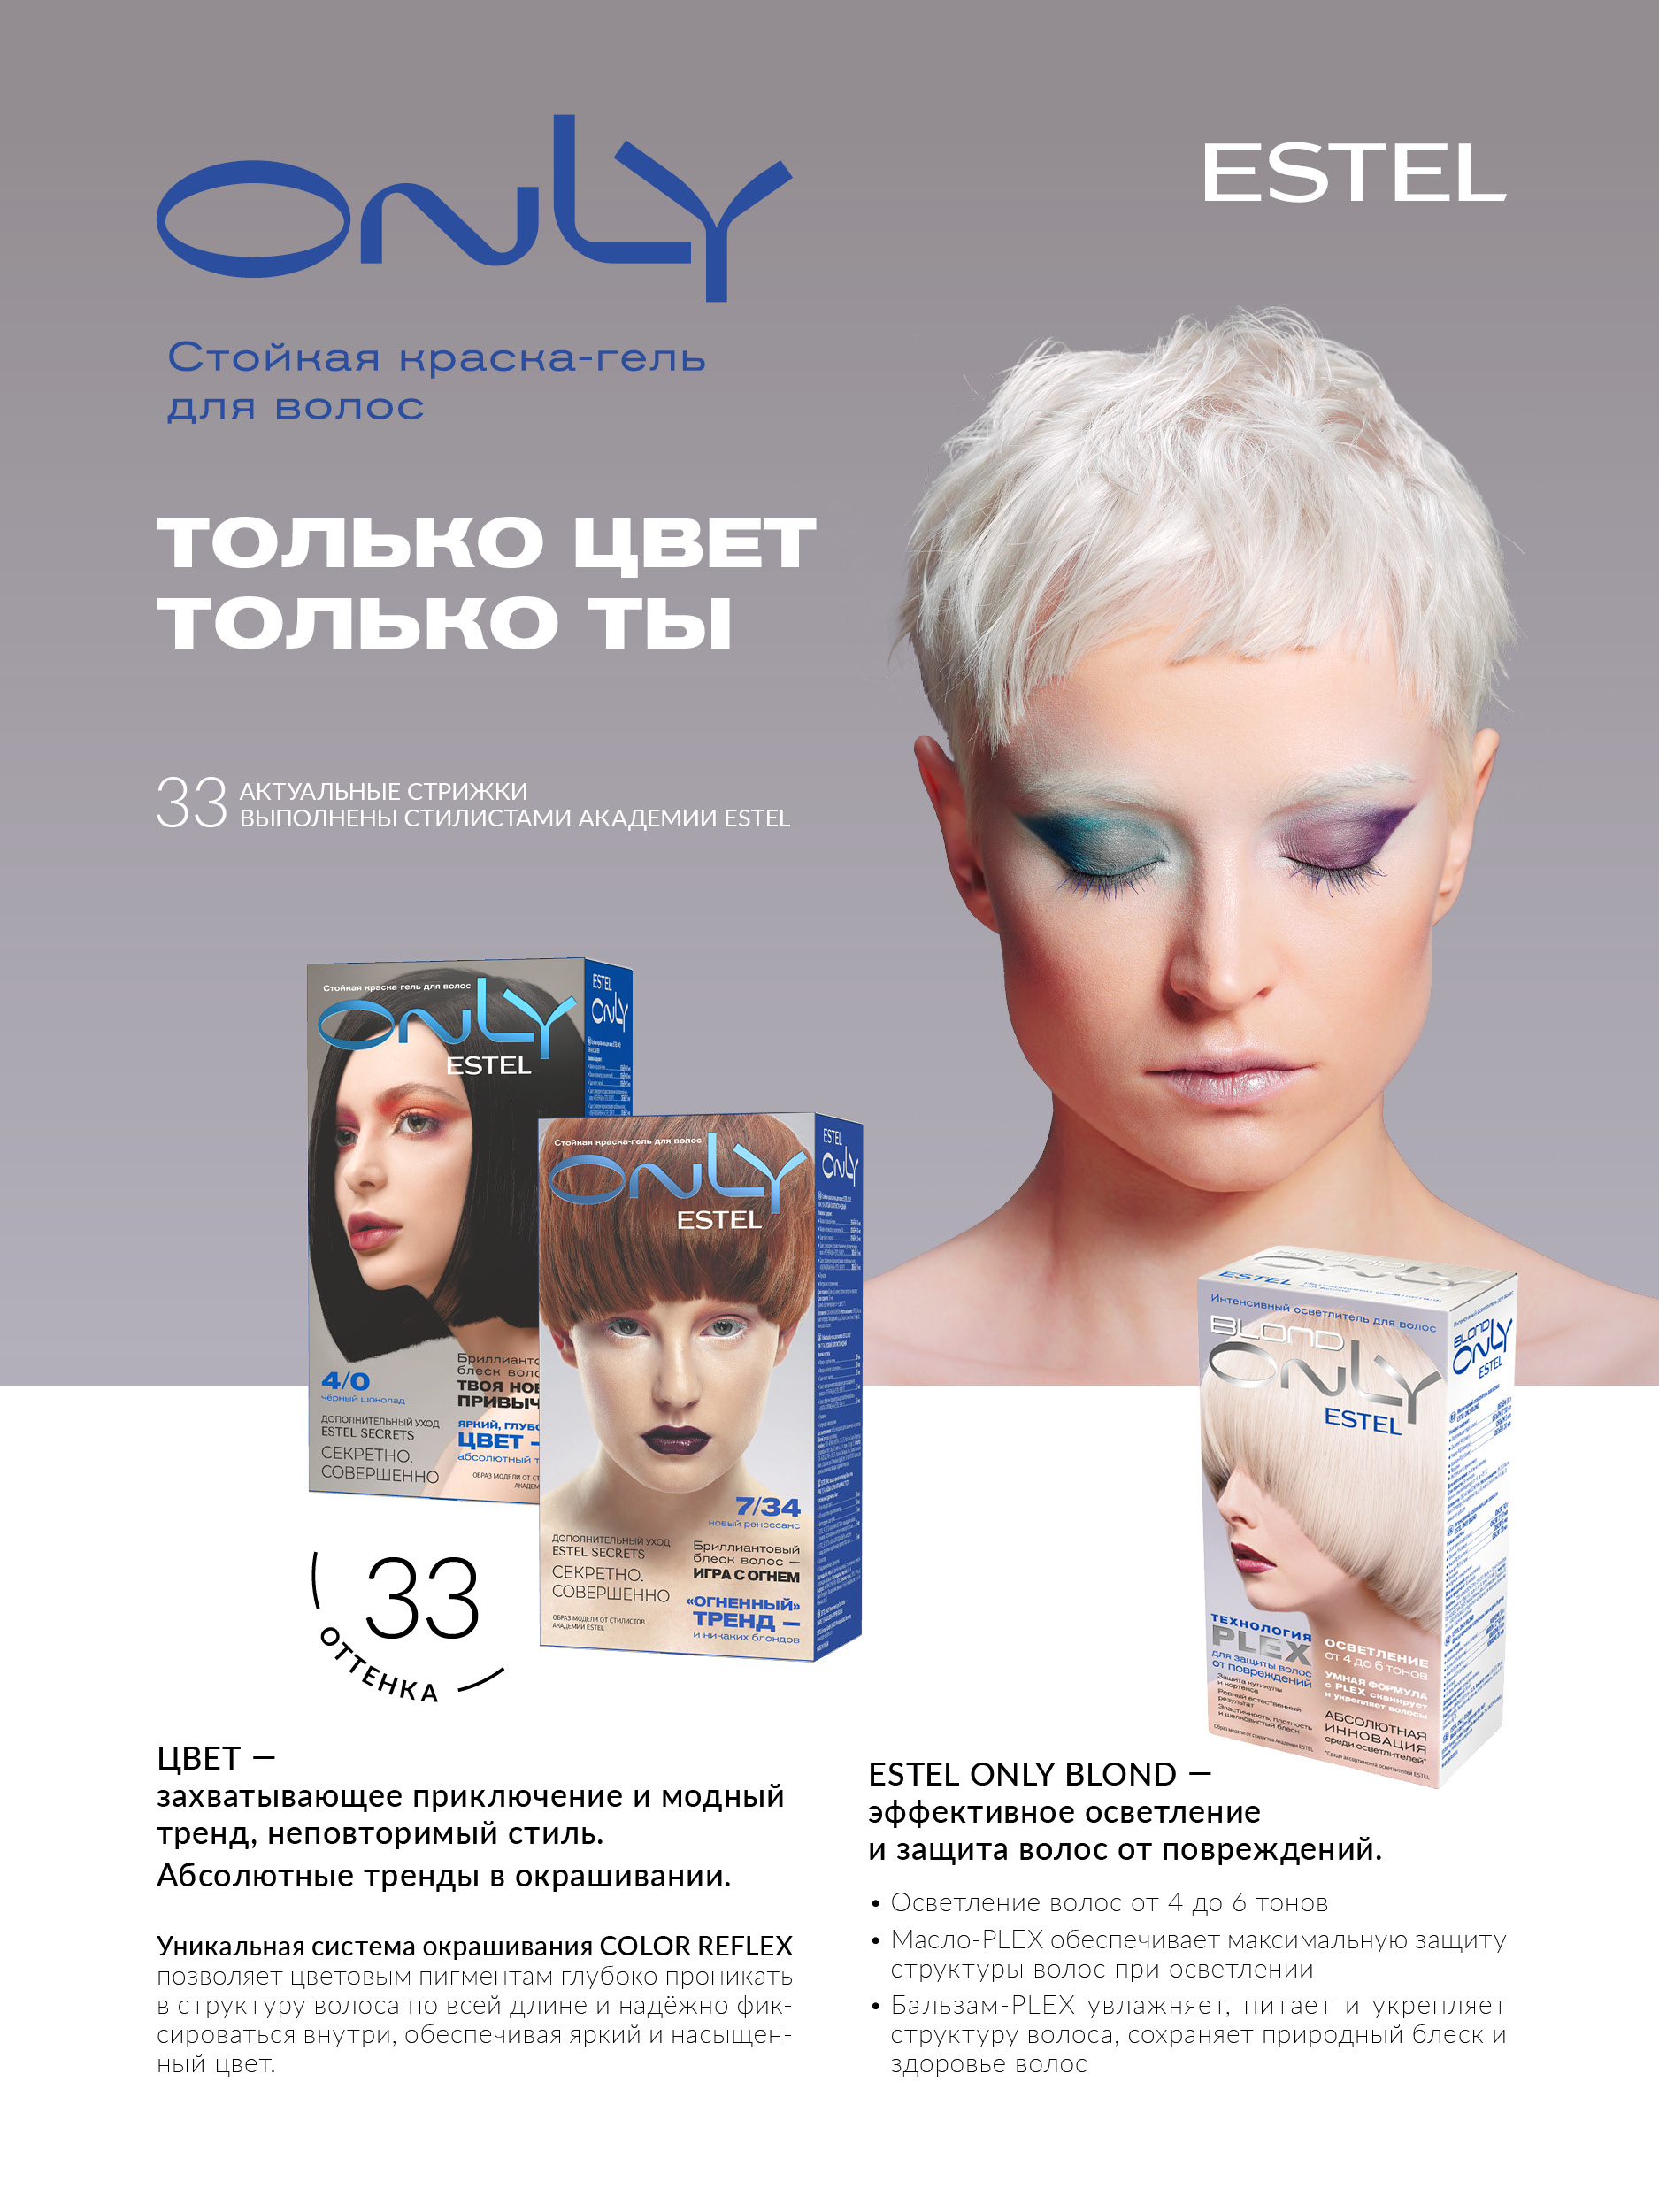 Краска для волос Estel Only тон 10.0 светлый блондин 50мл - купить в Минске в интернет-магазине косметики. Оптовые цены. Скидки.